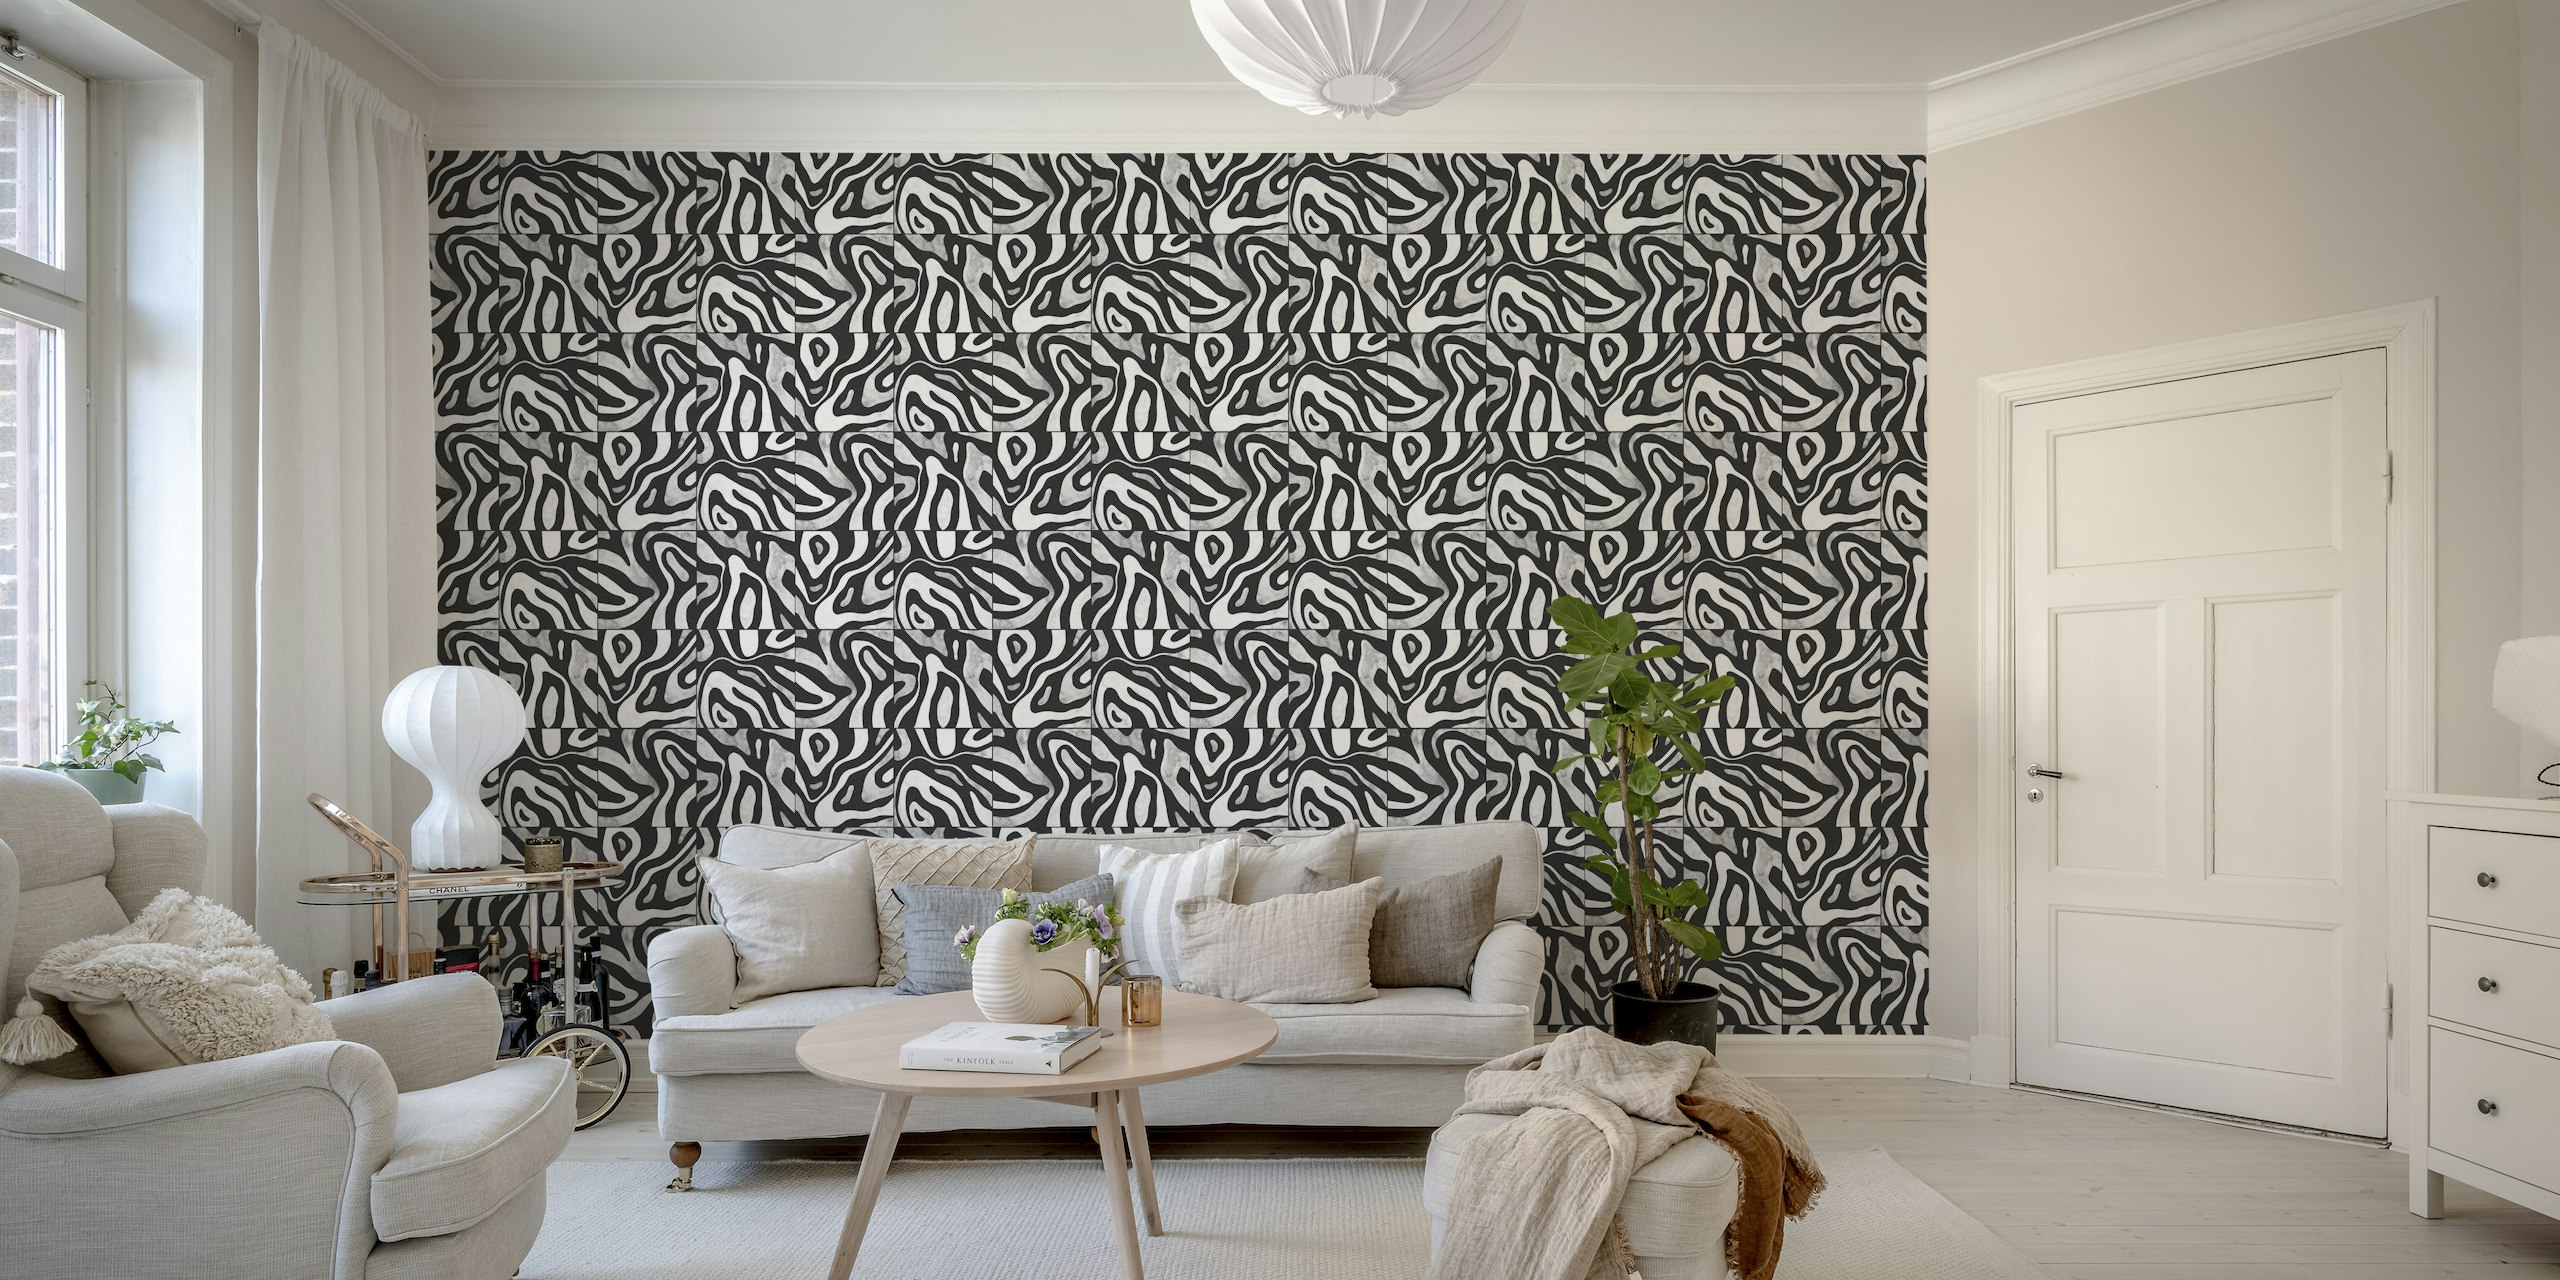 Mural abstracto en blanco y negro con un patrón que se asemeja a colinas vistas desde arriba